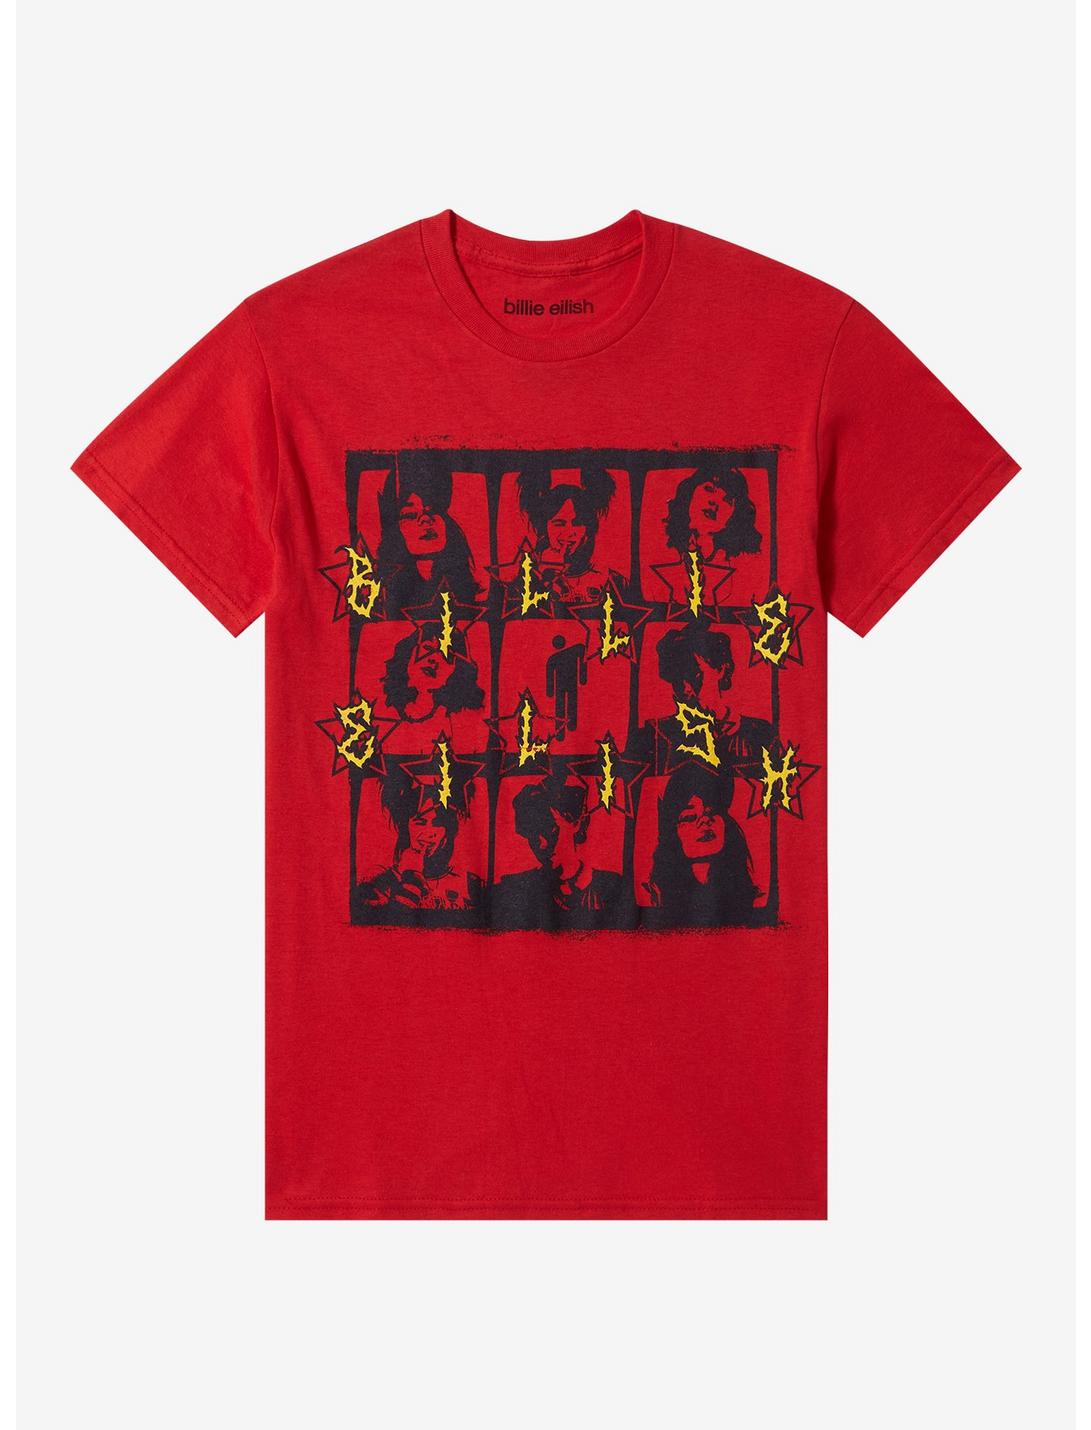 Billie Eilish Grid Boyfriend Fit Girls T-Shirt, RED, hi-res